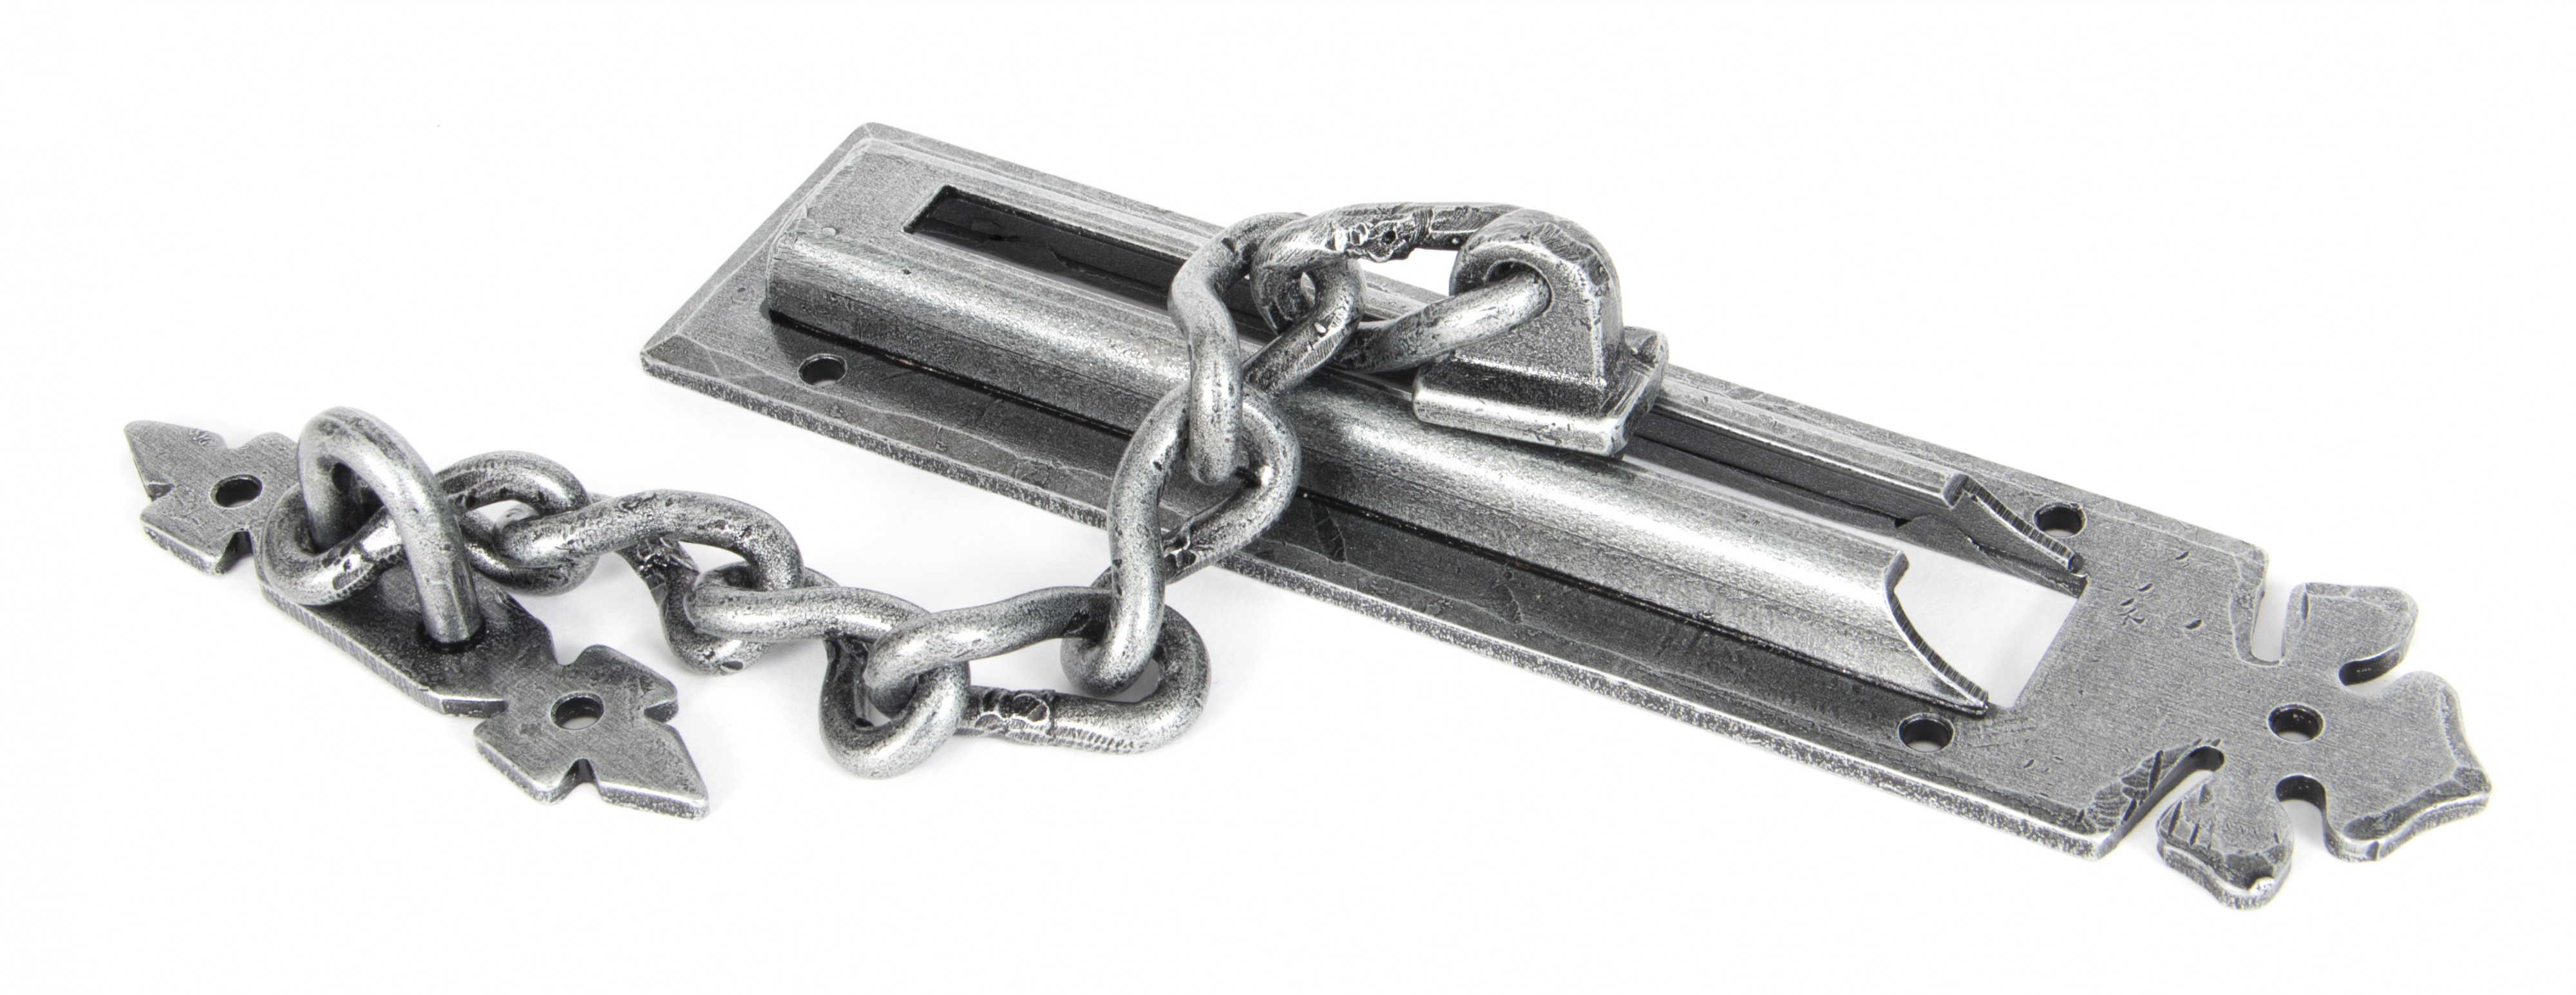 Door Chain